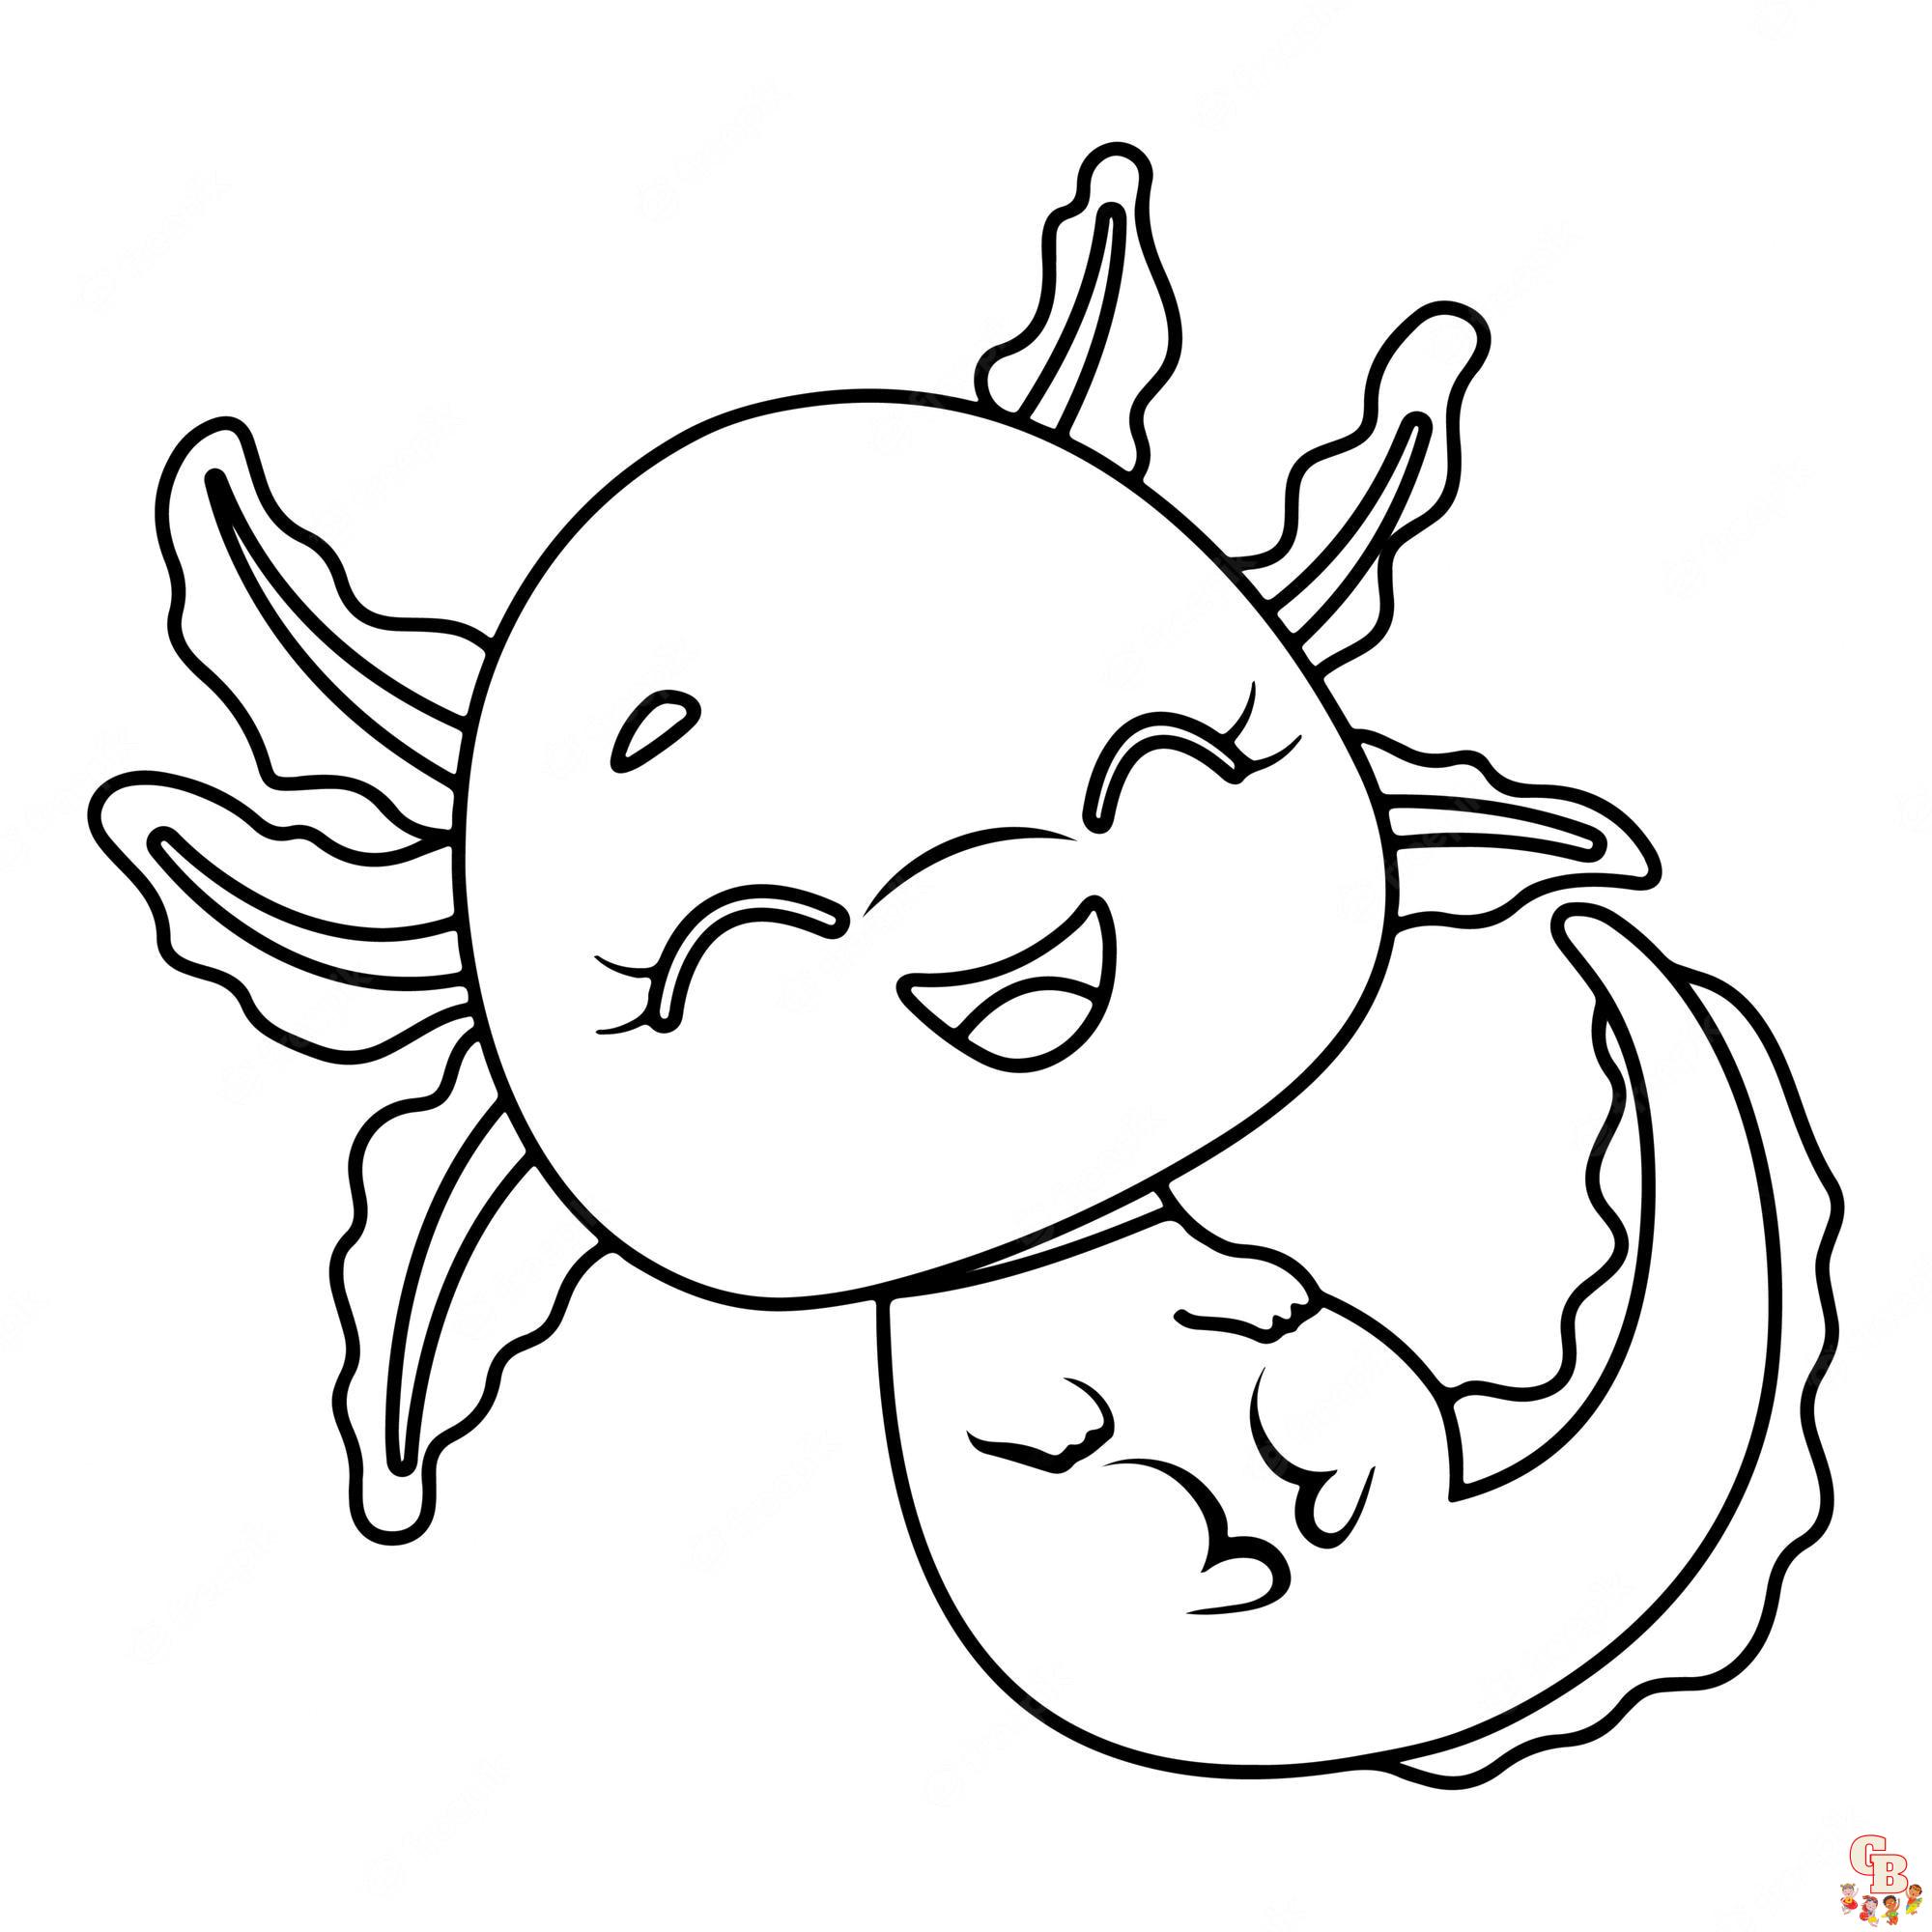 Malvorlagen Axolotl 2